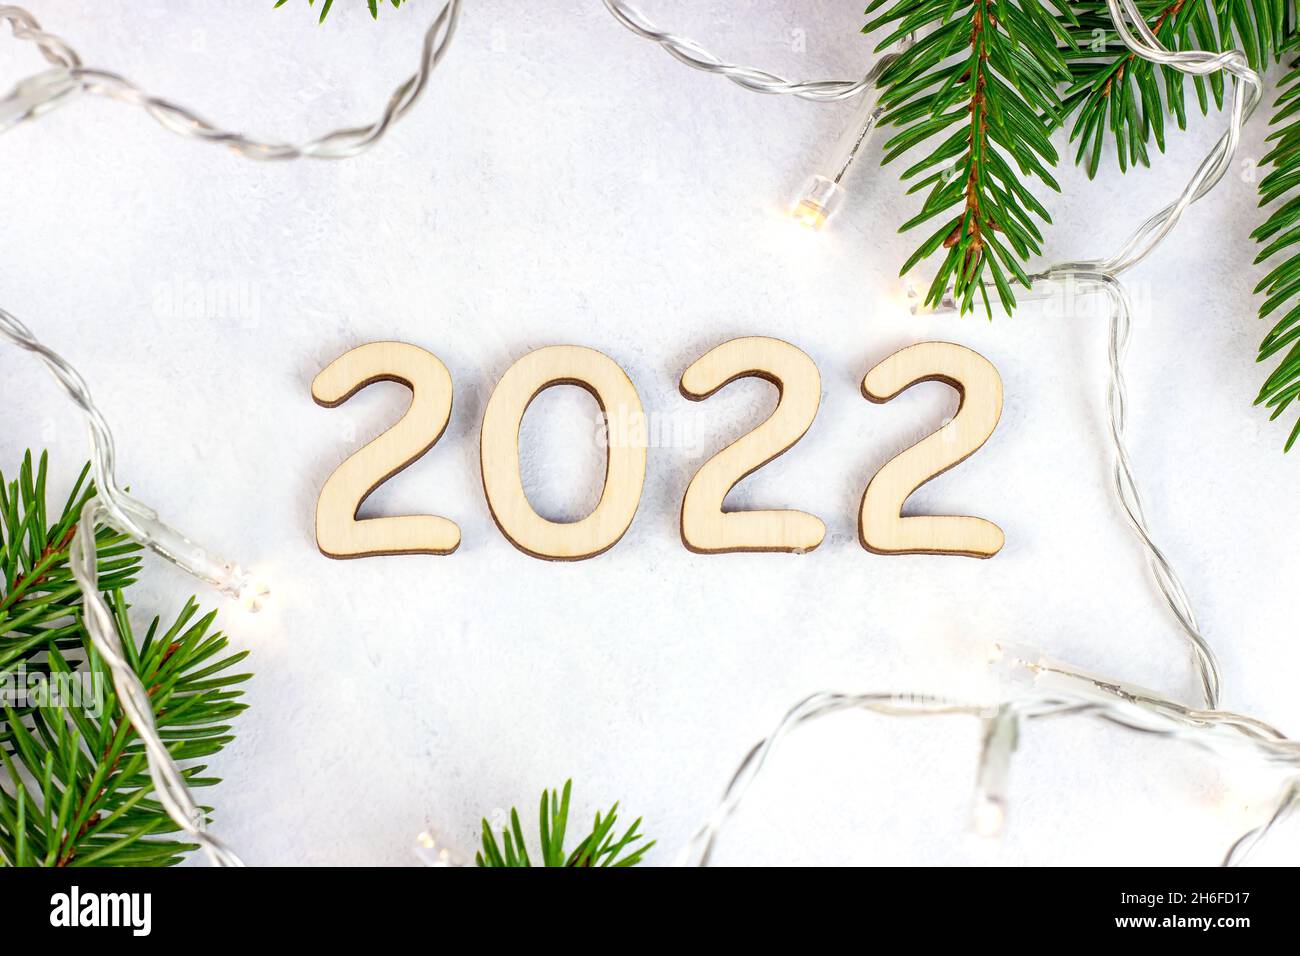 La silueta de los números 2022 de madera con luces de Navidad y ramas verdes de abetos sobre fondo claro. Comienzo de Año Nuevo felicitaciones y planificación Foto de stock